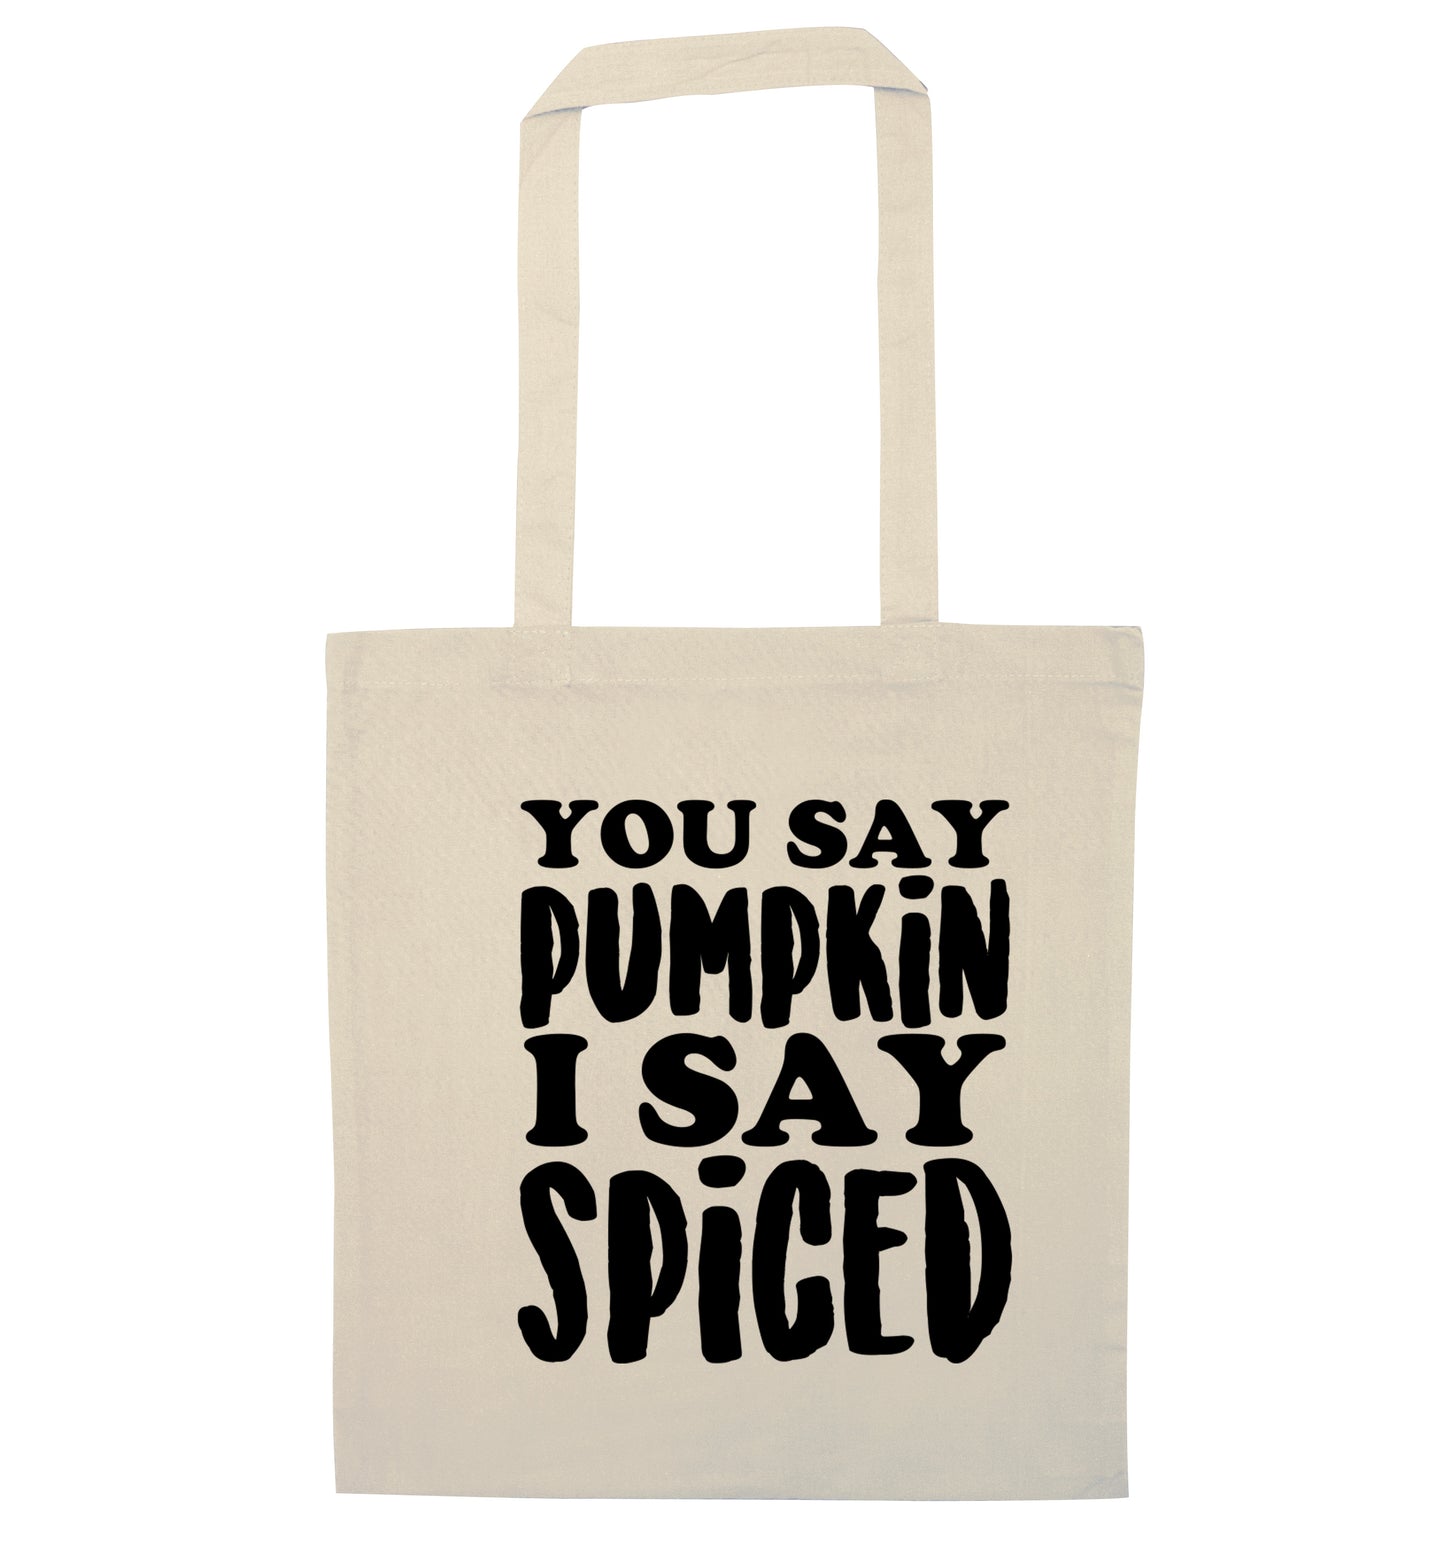 You say pumpkin I say spiced! natural tote bag